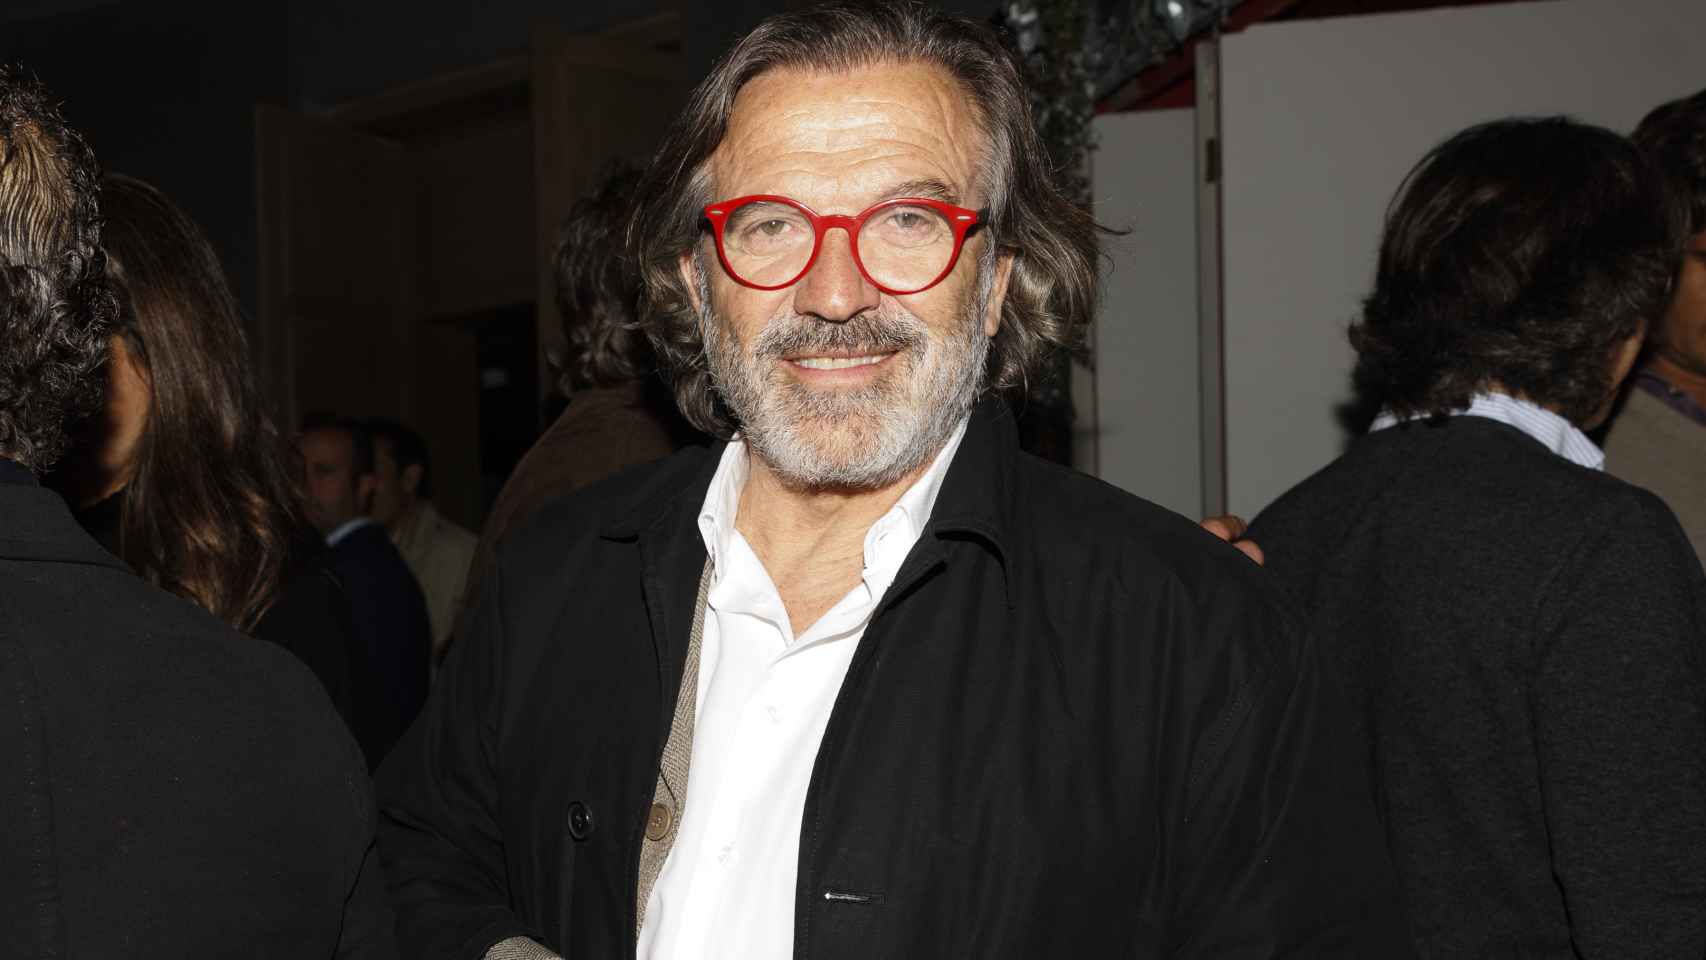 El presentador Pepe Navarro en una fotografía tomada en abril de 2022 en un acto público.